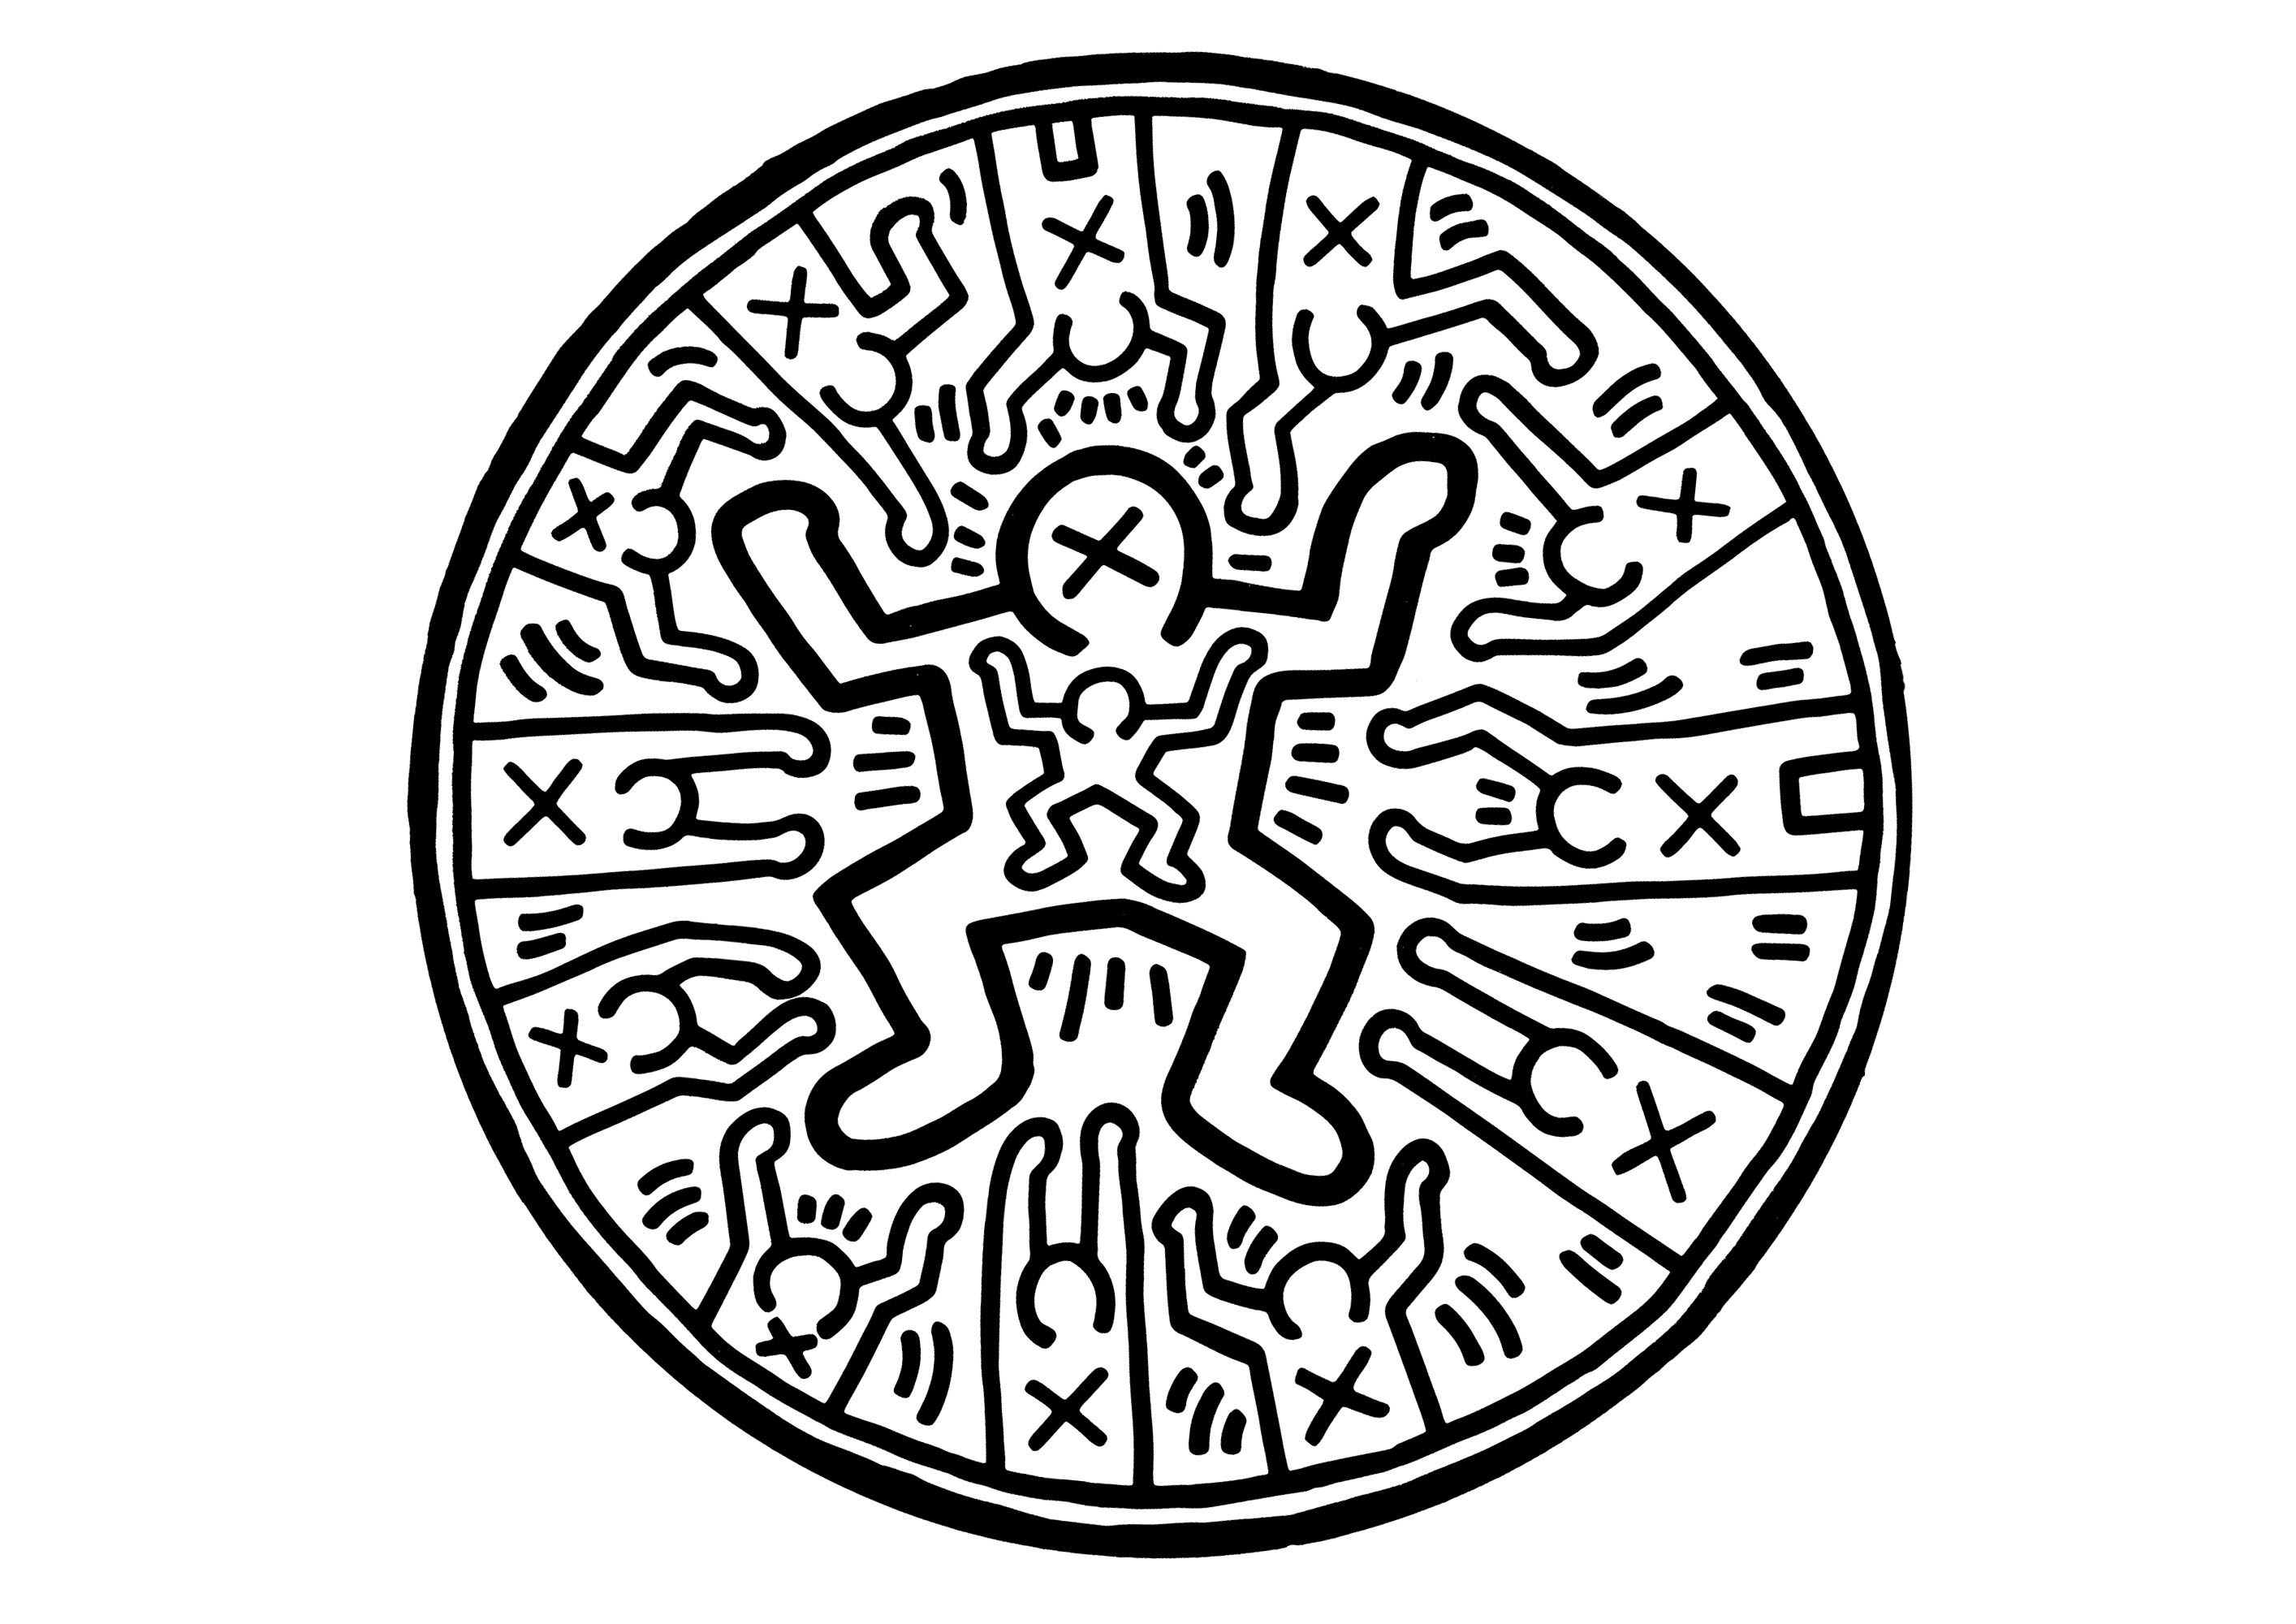 Coloração circular inspirada nas obras de Keith Haring. As famosas personagens de Keith Haring num design circular cheio de energia